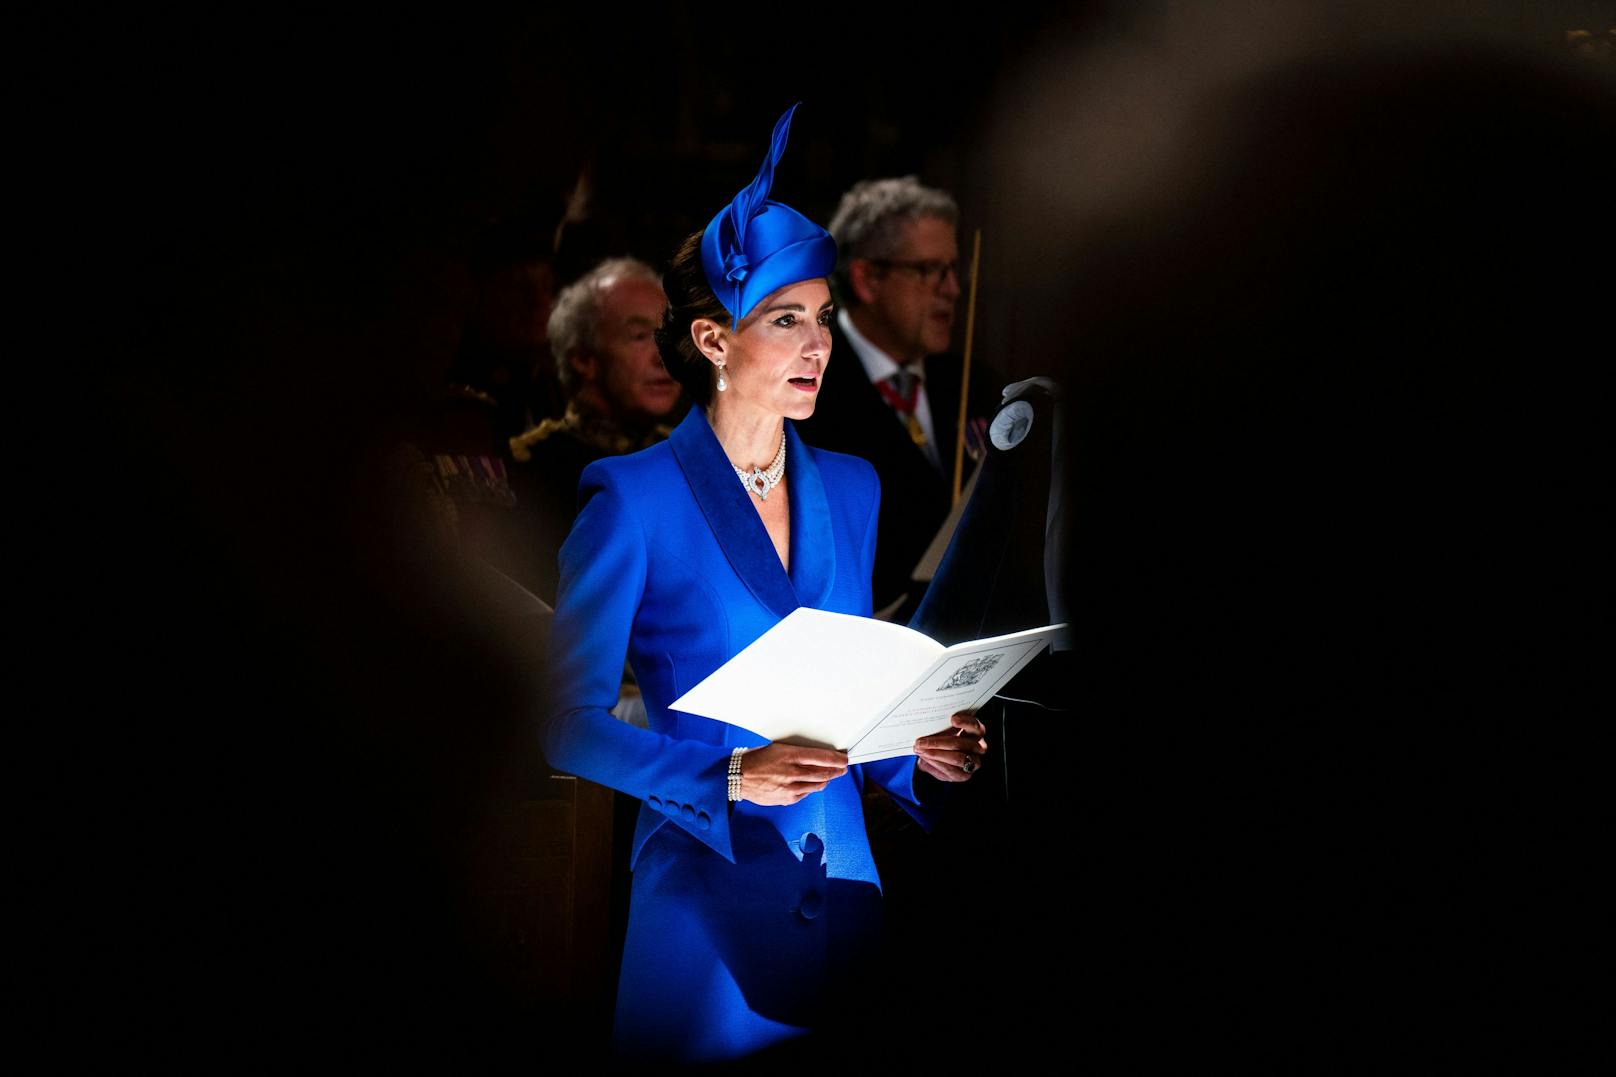 Dazu kombinierte die 41-Jährige einen Hut von Philip Treacy und Perlenschmuck aus der Sammlung der verstorbenen Queen Elizabeth II. - als eine Hommage an die Monarchin.